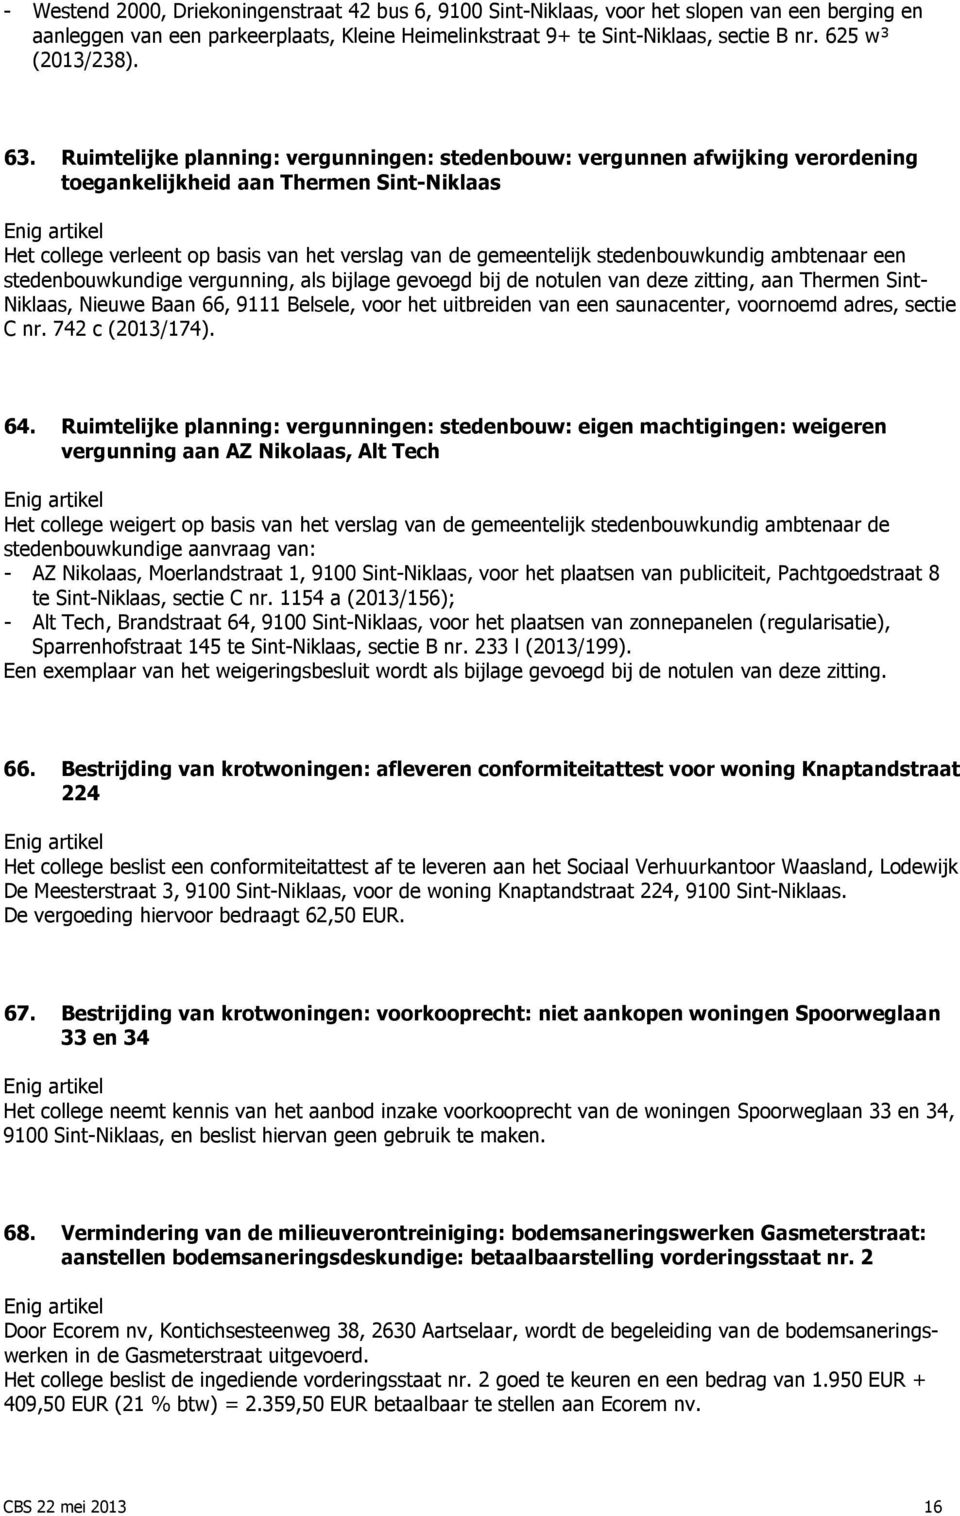 Ruimtelijke planning: vergunningen: stedenbouw: vergunnen afwijking verordening toegankelijkheid aan Thermen Sint-Niklaas Het college verleent op basis van het verslag van de gemeentelijk